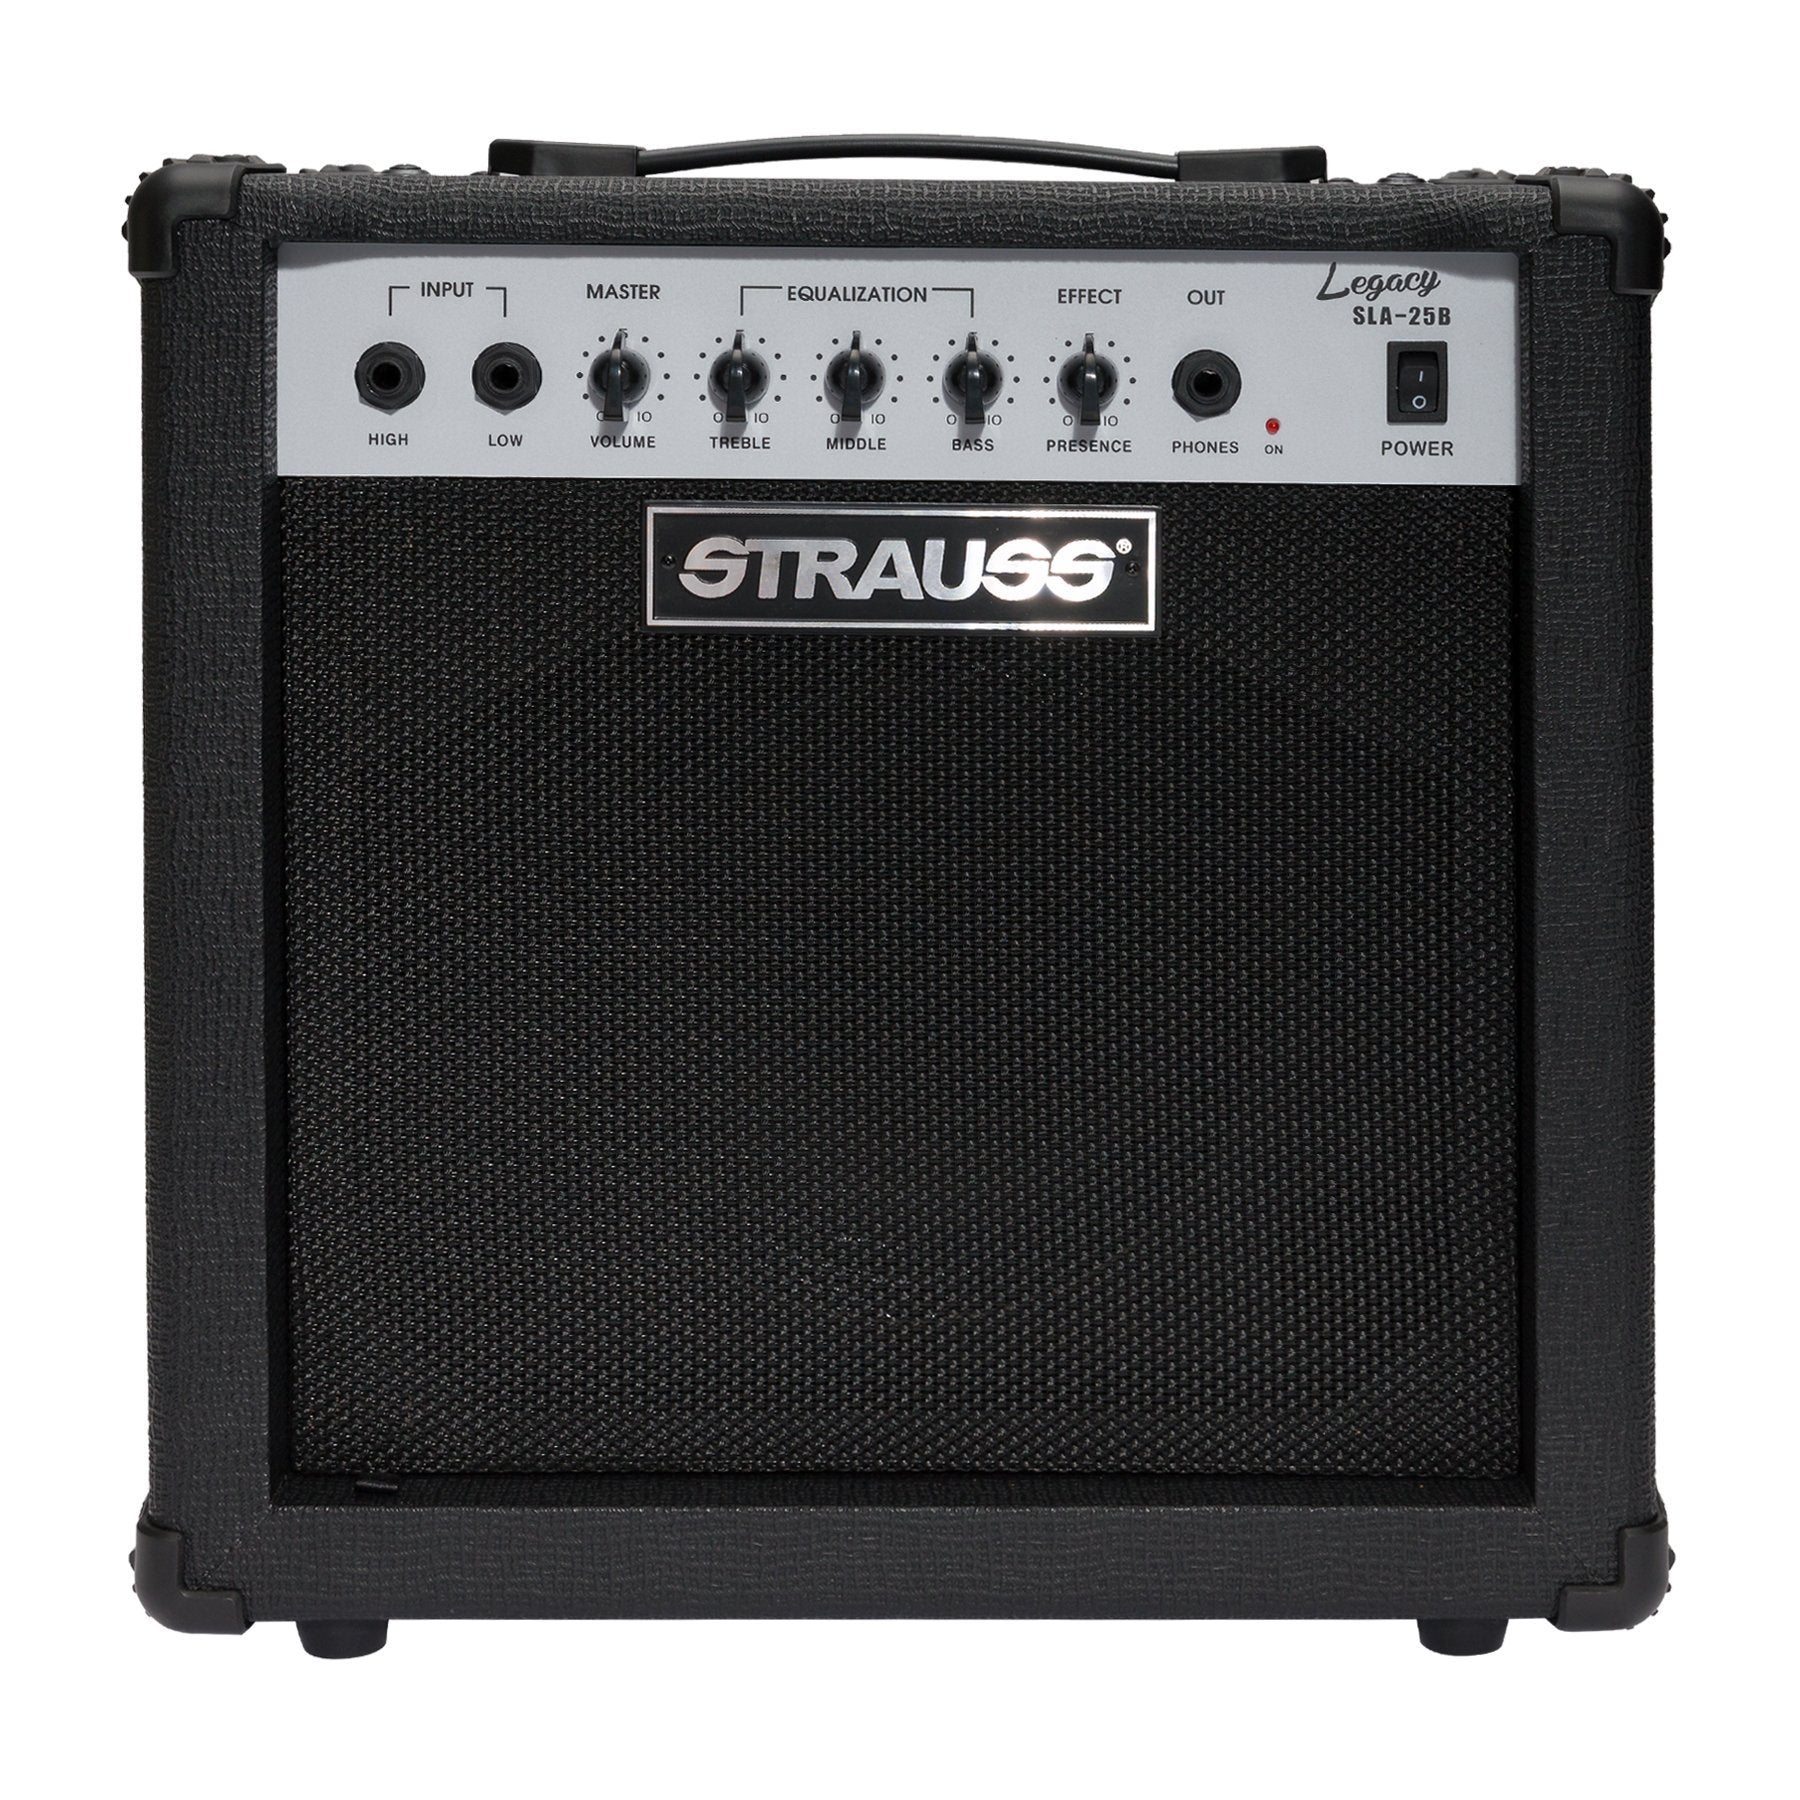 Strauss 'Legacy' 25 Watt Combo Solid State Bass Amplifier (Black)-SLA-25B-BLK